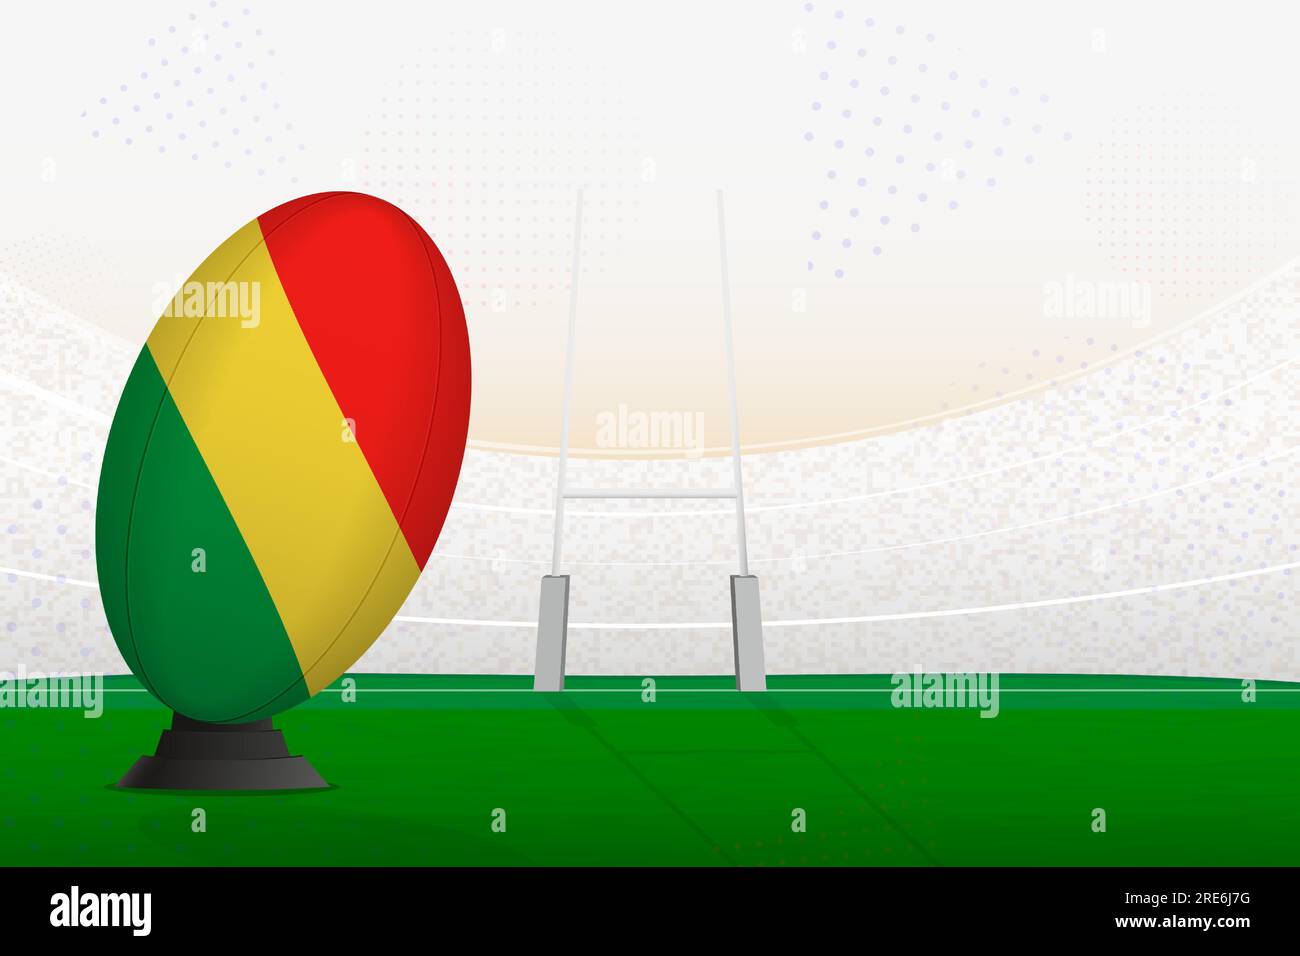 Ballon de rugby de l'équipe nationale du Congo sur le stade de rugby et les poteaux de but, se préparant à un penalty ou coup franc. Illustration vectorielle. Illustration de Vecteur